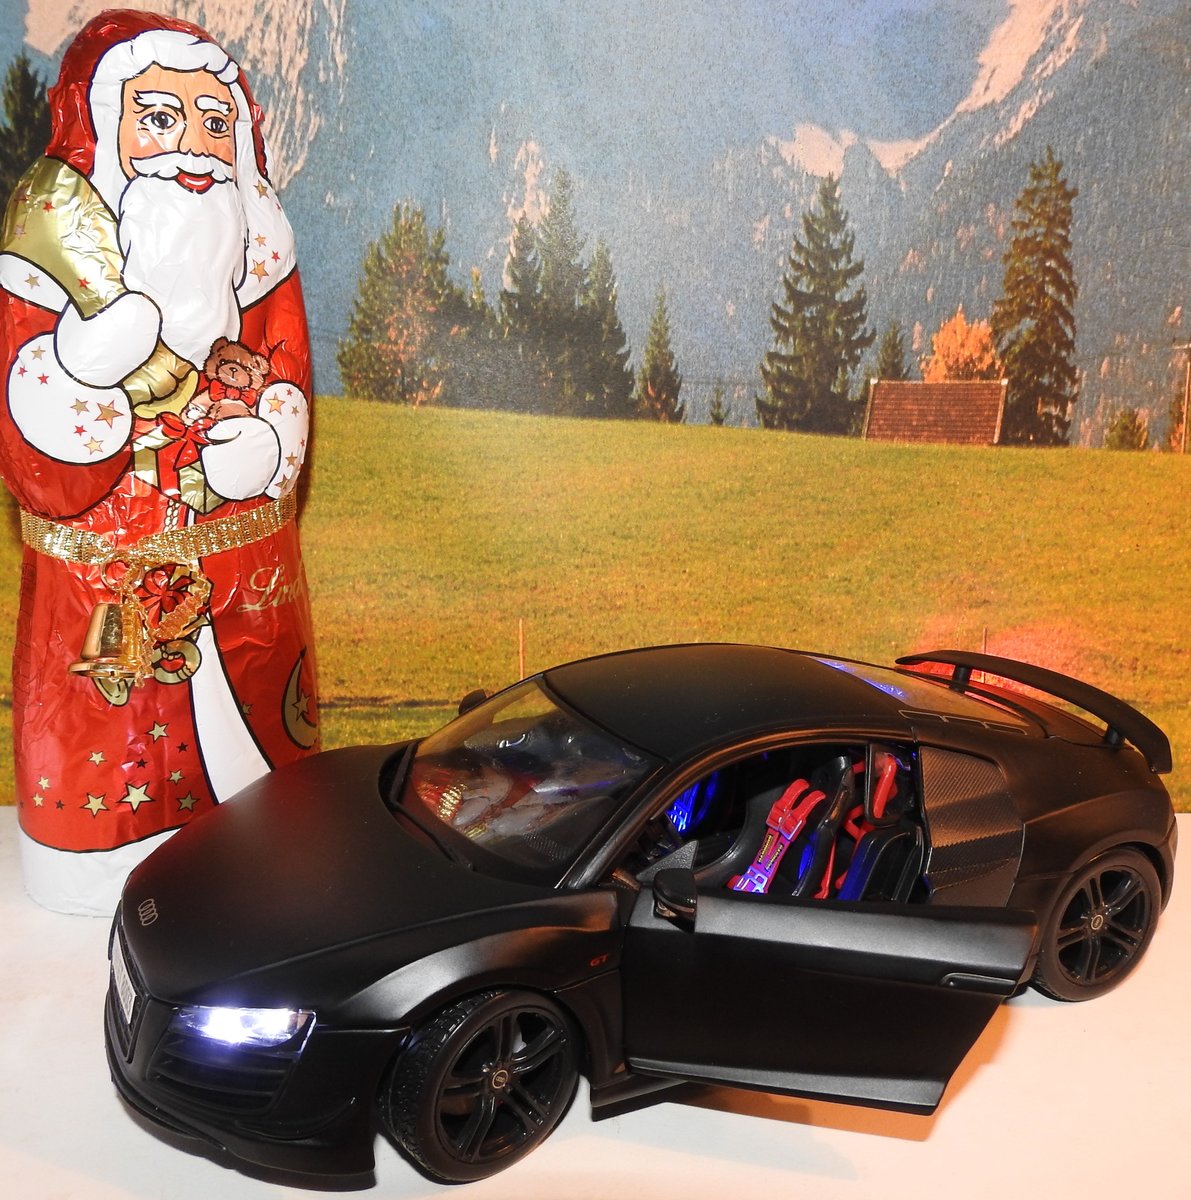 MAISTO AUDI R8 GT IN 1:18
Ein wirklich heißer Schlitten für den Weihnachtsmann,der R8 GT in Mattschwarz
und Händler-gesupert mit LEDs- am 21.12.2017.....